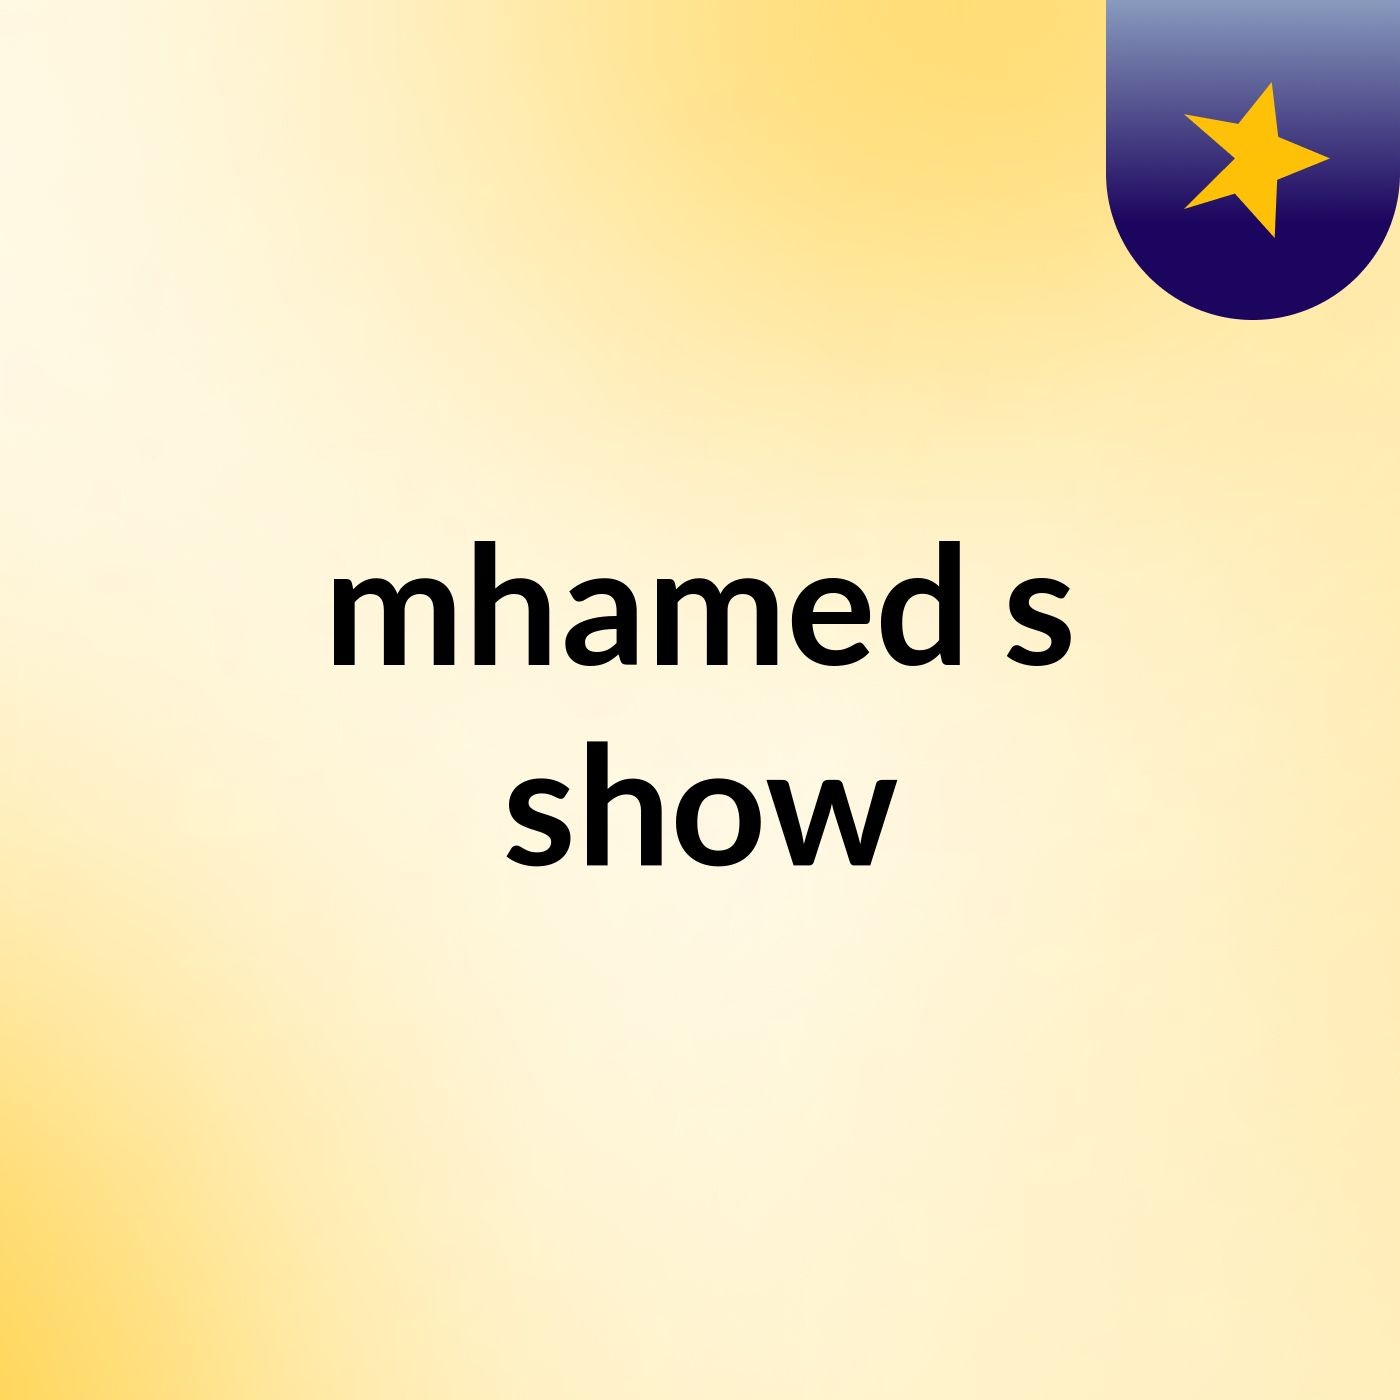 mhamed's show